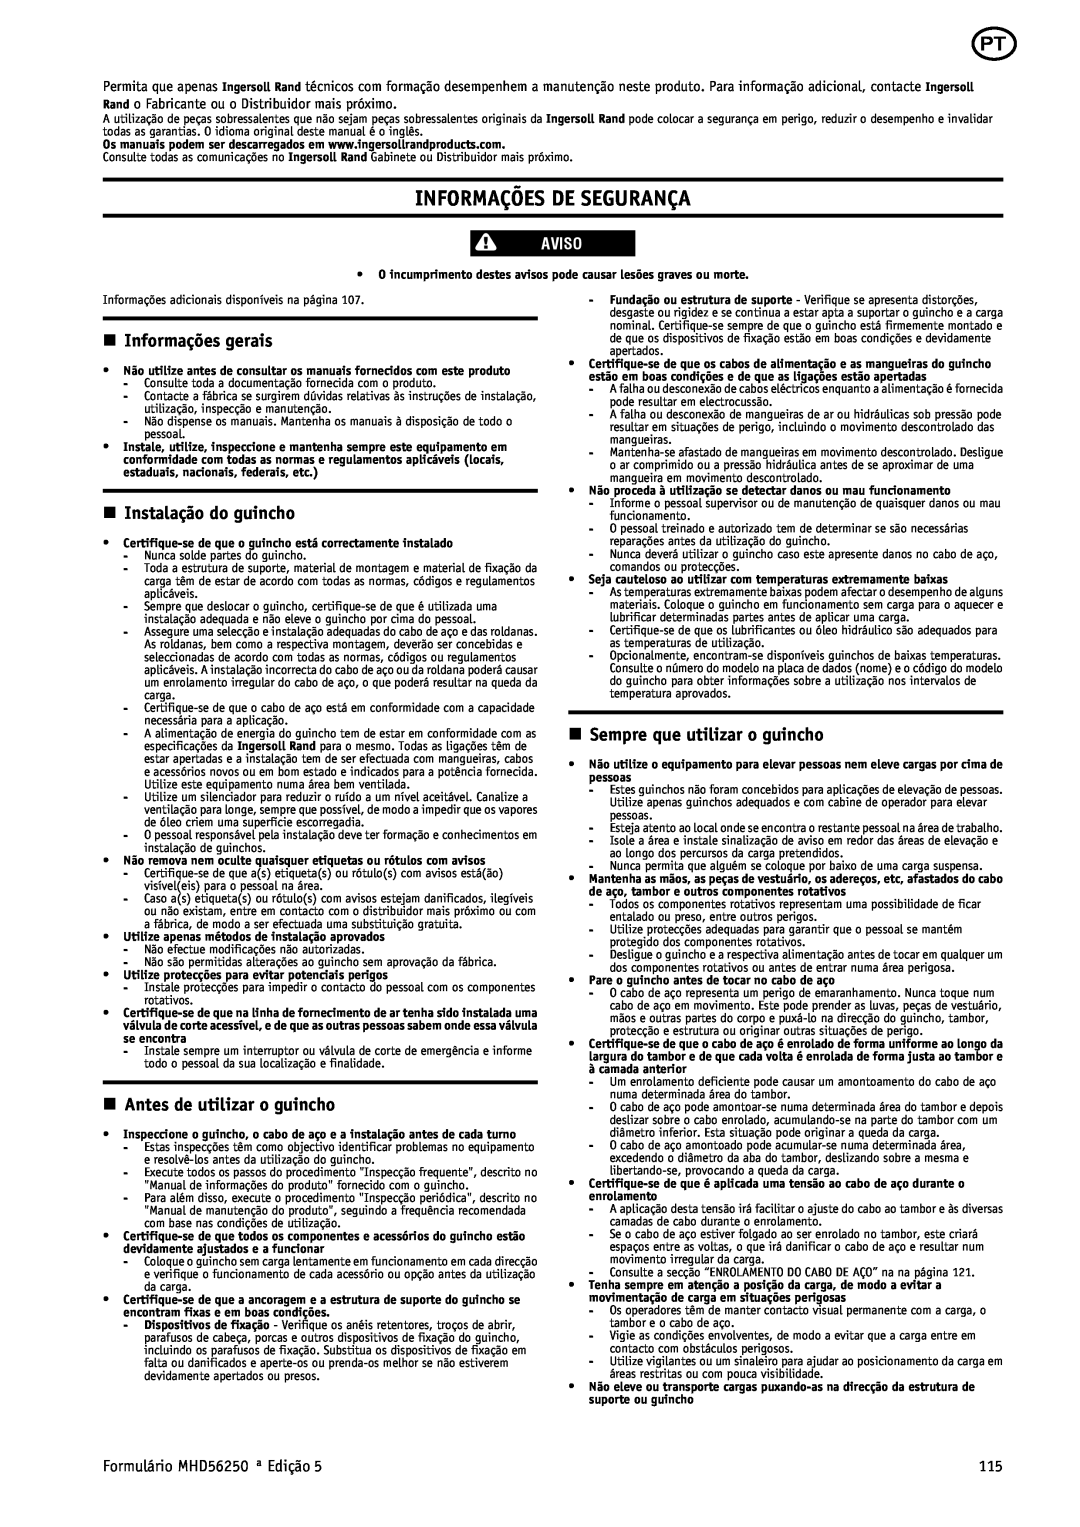 Ingersoll-Rand MHD56250 manual Informações De Segurança, n Informações gerais, n Instalação do guincho, Aviso 